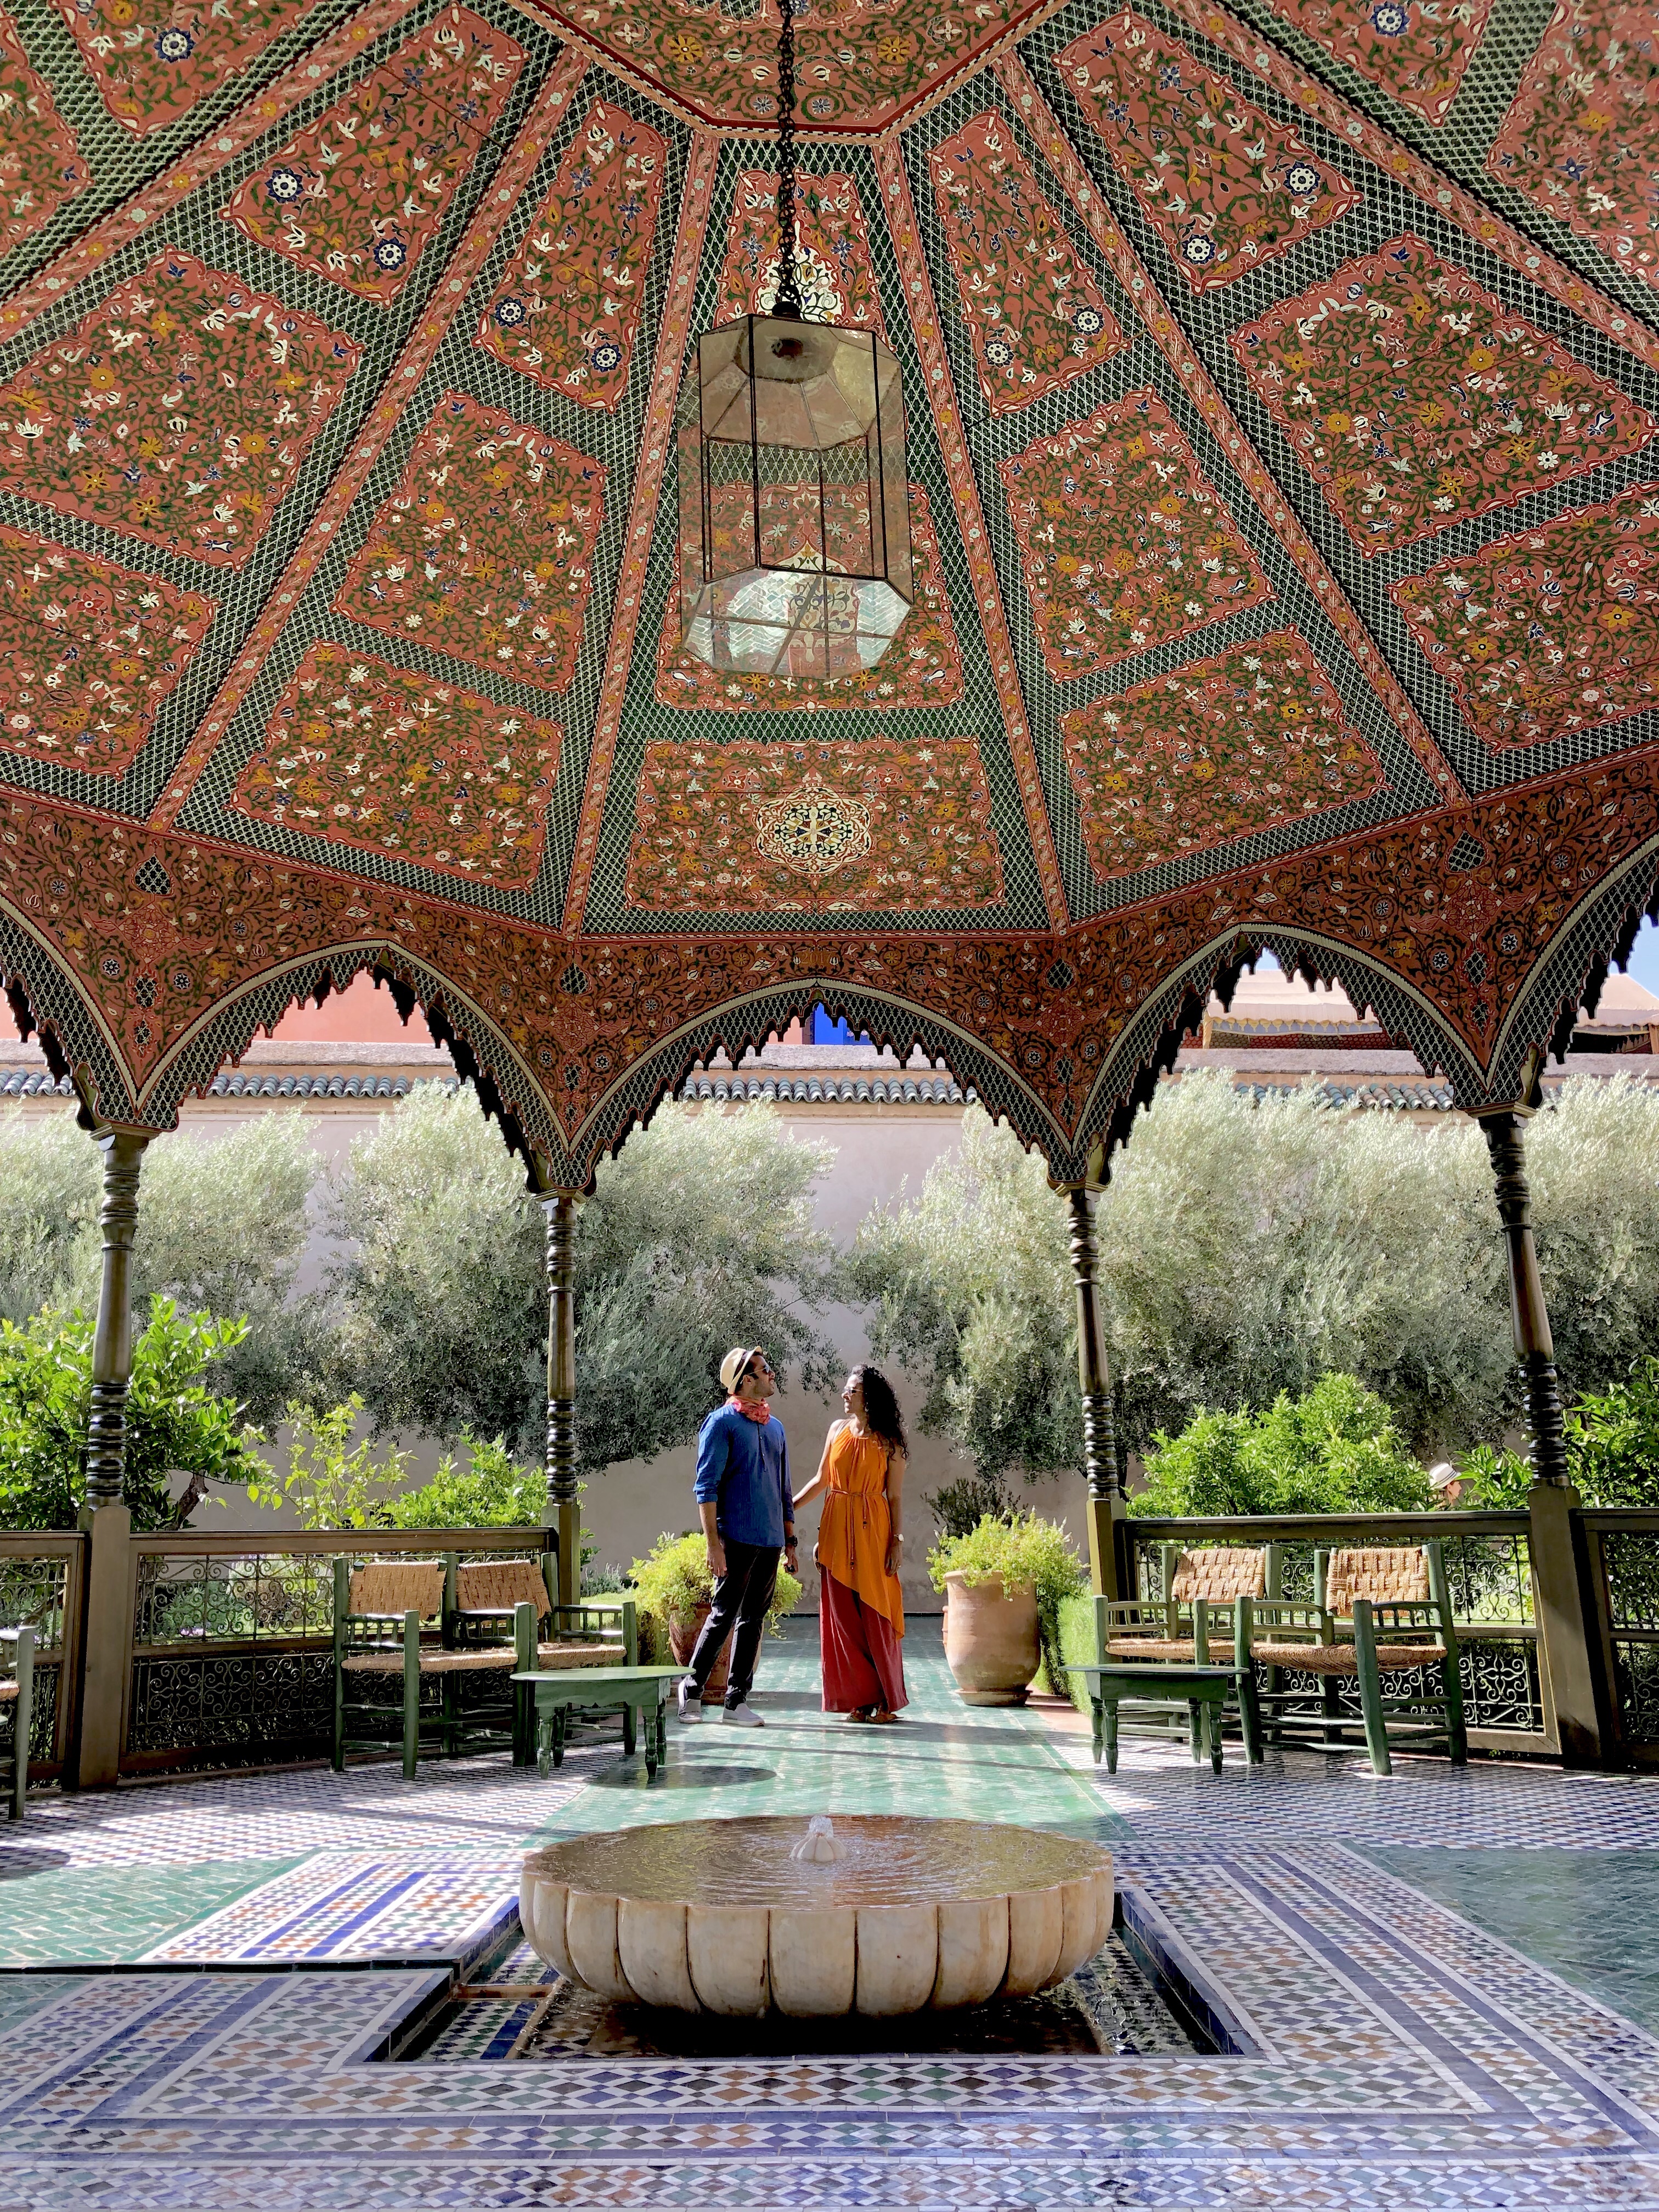 the stunning courtyard in the Islamic garden.